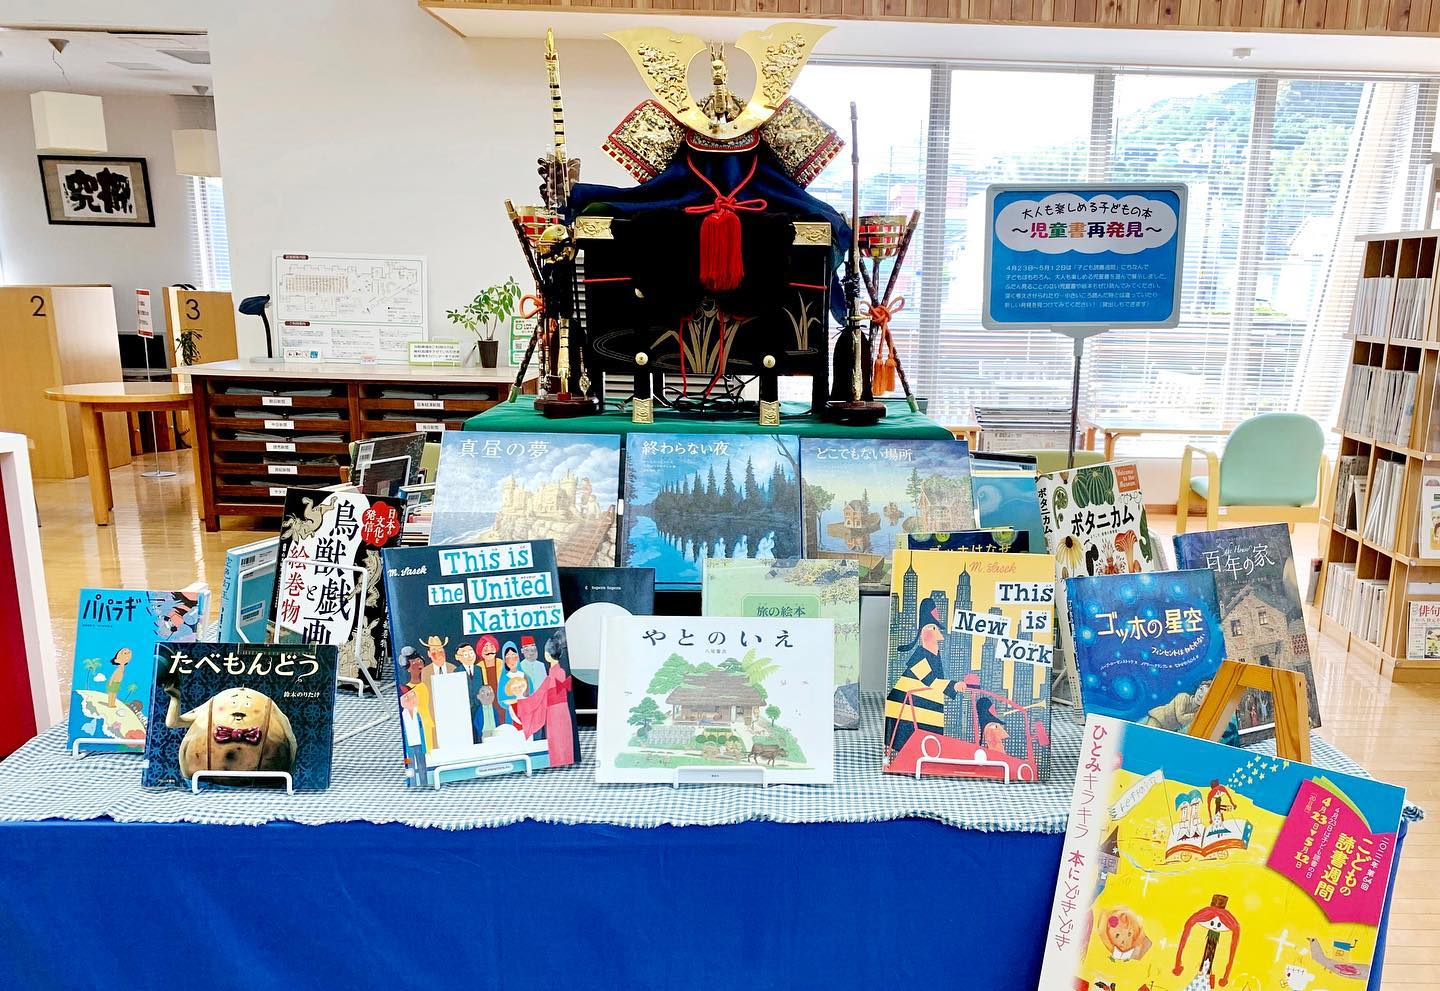 熊野市立図書館５月のテーマ展は「大人も楽しめる子どもの本～児童書再発見～」。
　「子どもの読書週間」にちなみ、子どもはもちろん大人の心に響く児童書や絵本、楽しく学べる歴史書など、児童書コーナーの中からおすすめ本を展示しています。同展は29日（日）まで。
#吉野熊野新聞#ヨシクマ新聞#よしくま#熊野市#御浜町#紀宝町#新宮市#尾鷲市#世界遺産#パワースポット#熊野市立図書館#子どもの読書週間
ヨシクマ新聞
https://www.yosikuma.com/